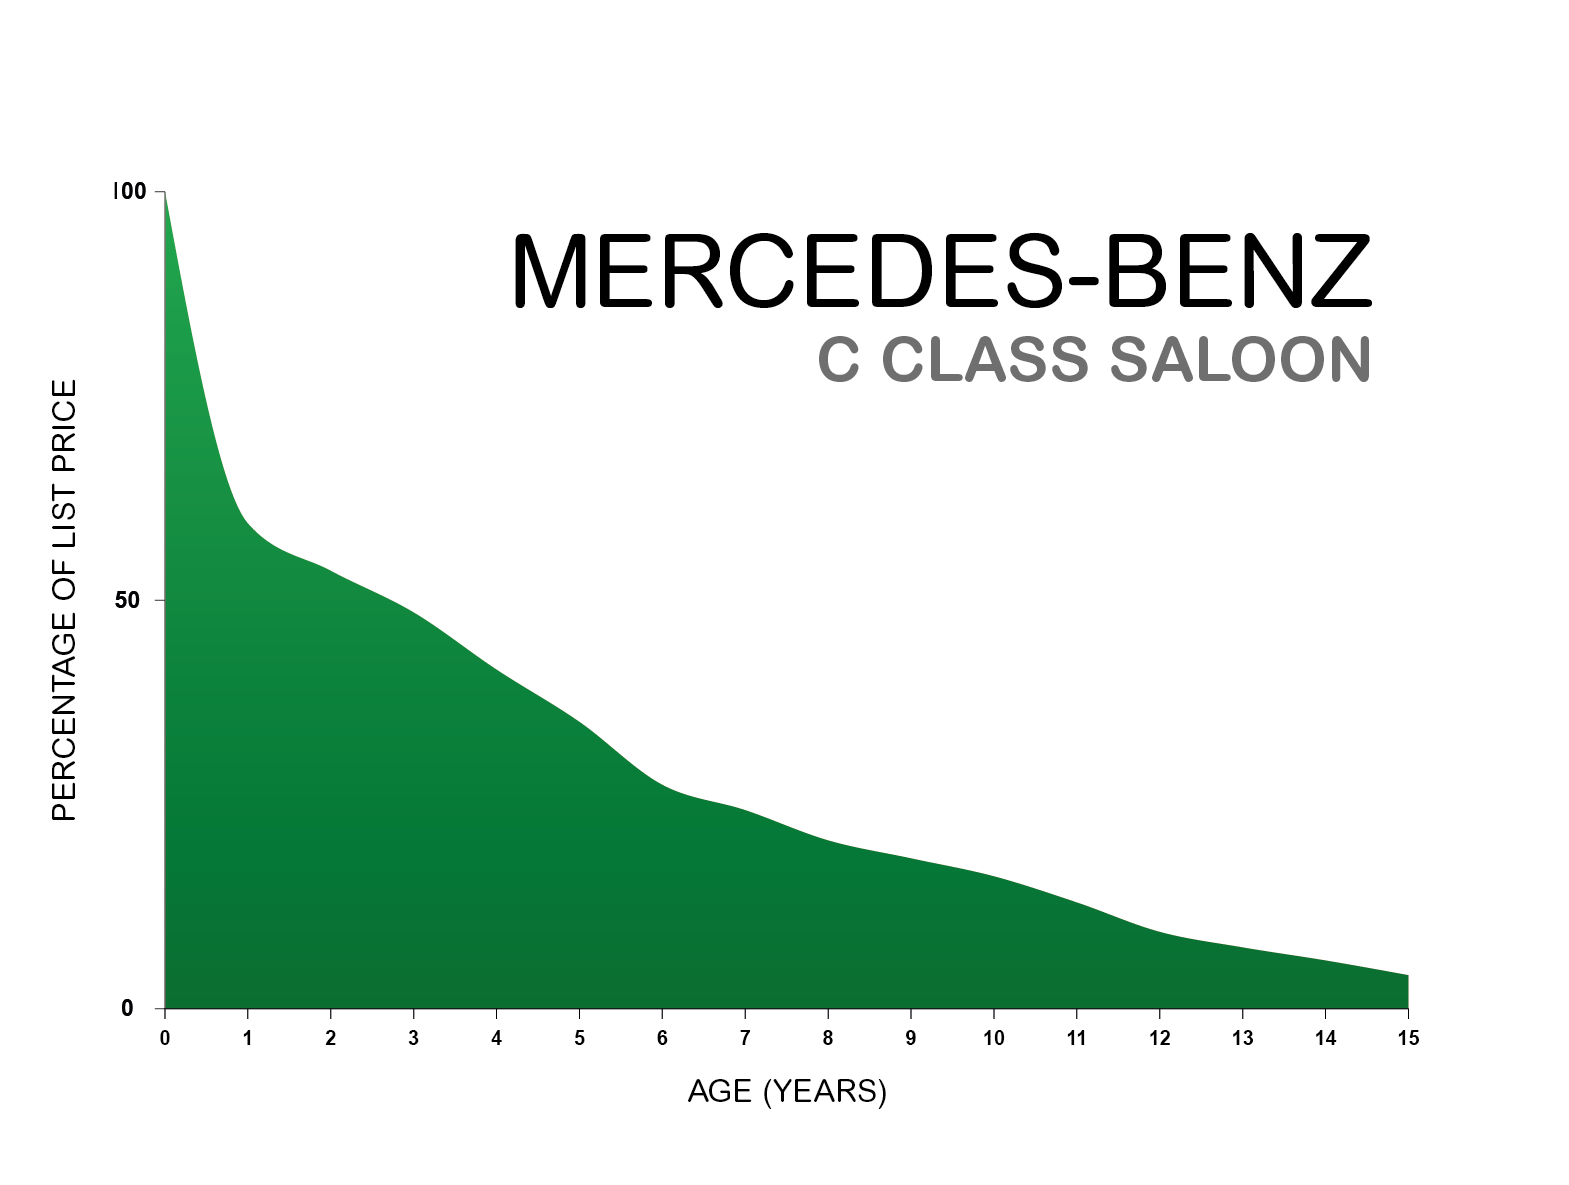 Mercedes C class depreciation graph